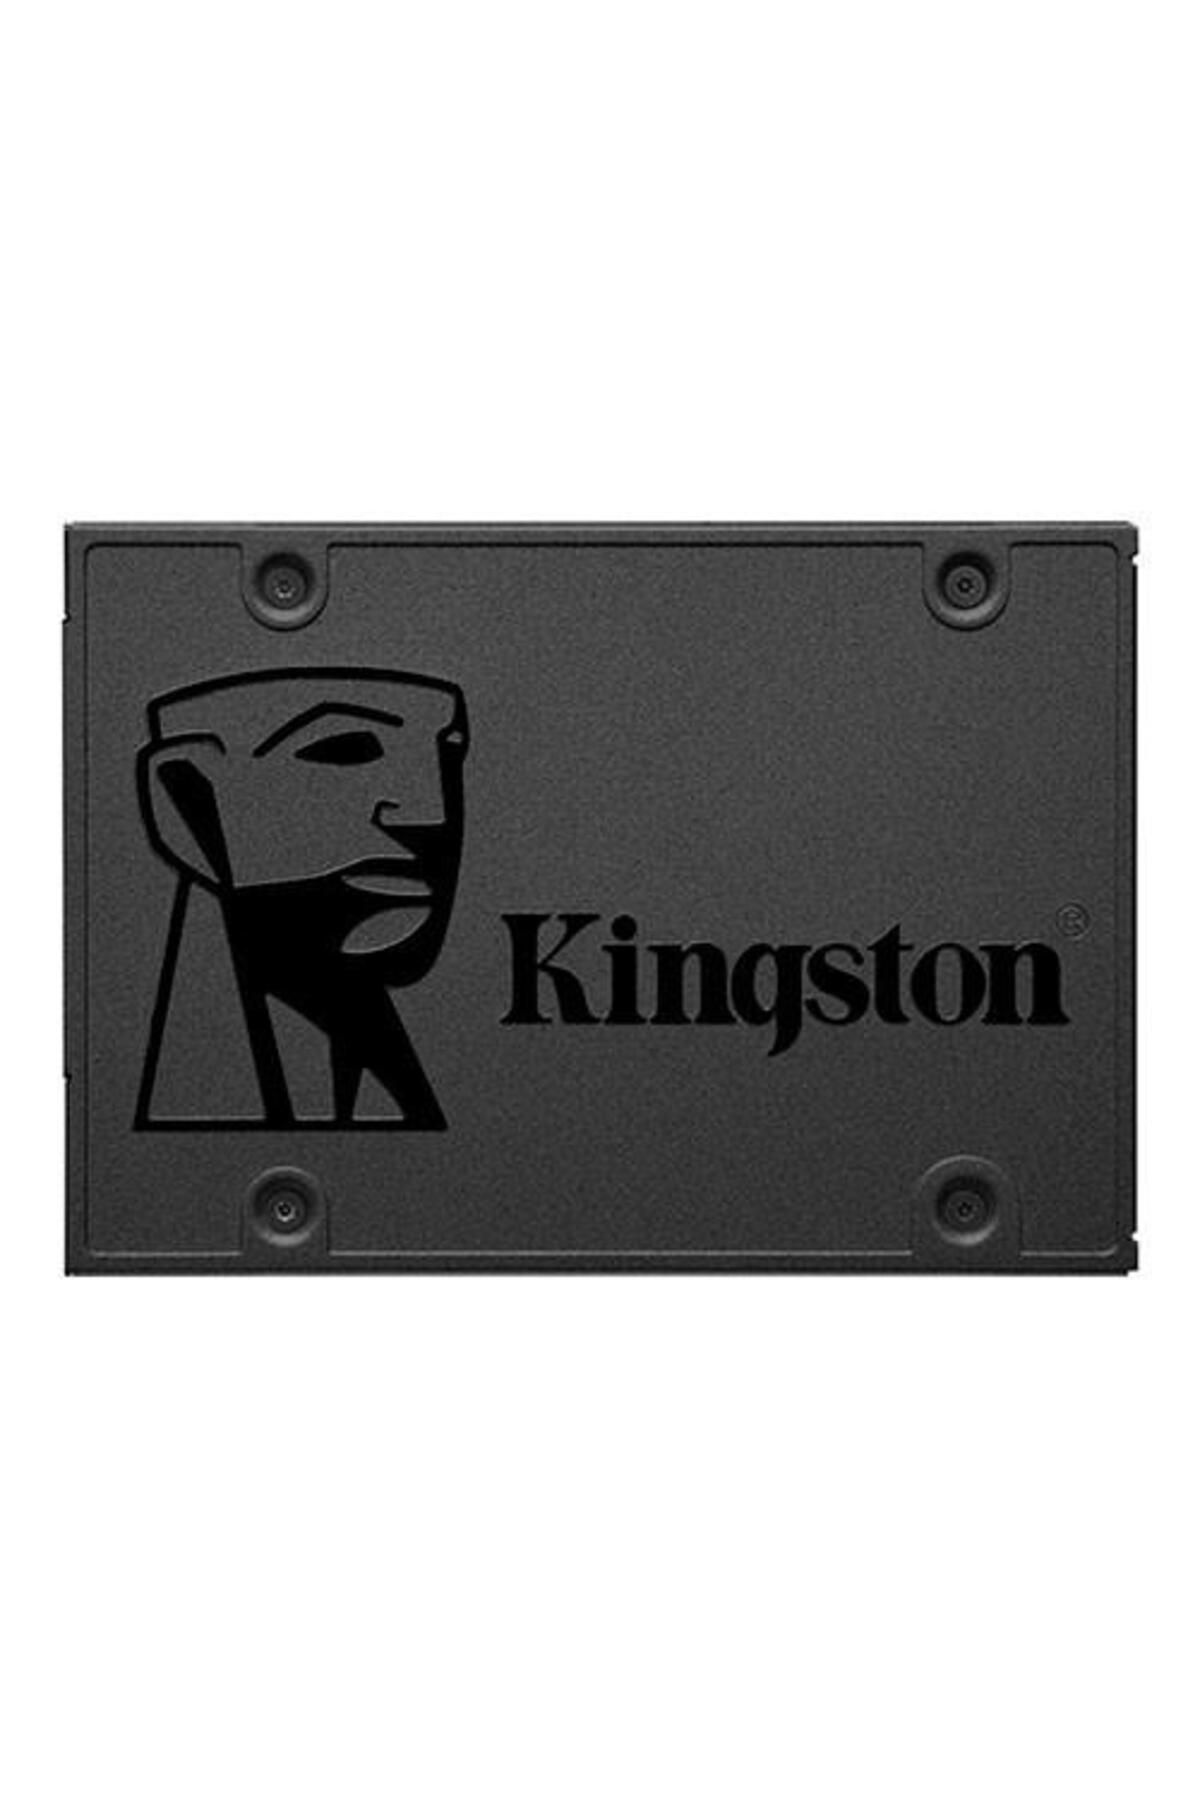 Kingston Kıngston 960gb Sa400 Sa400s37/960g 500-450mb/s Sata-3 Ssd Disk